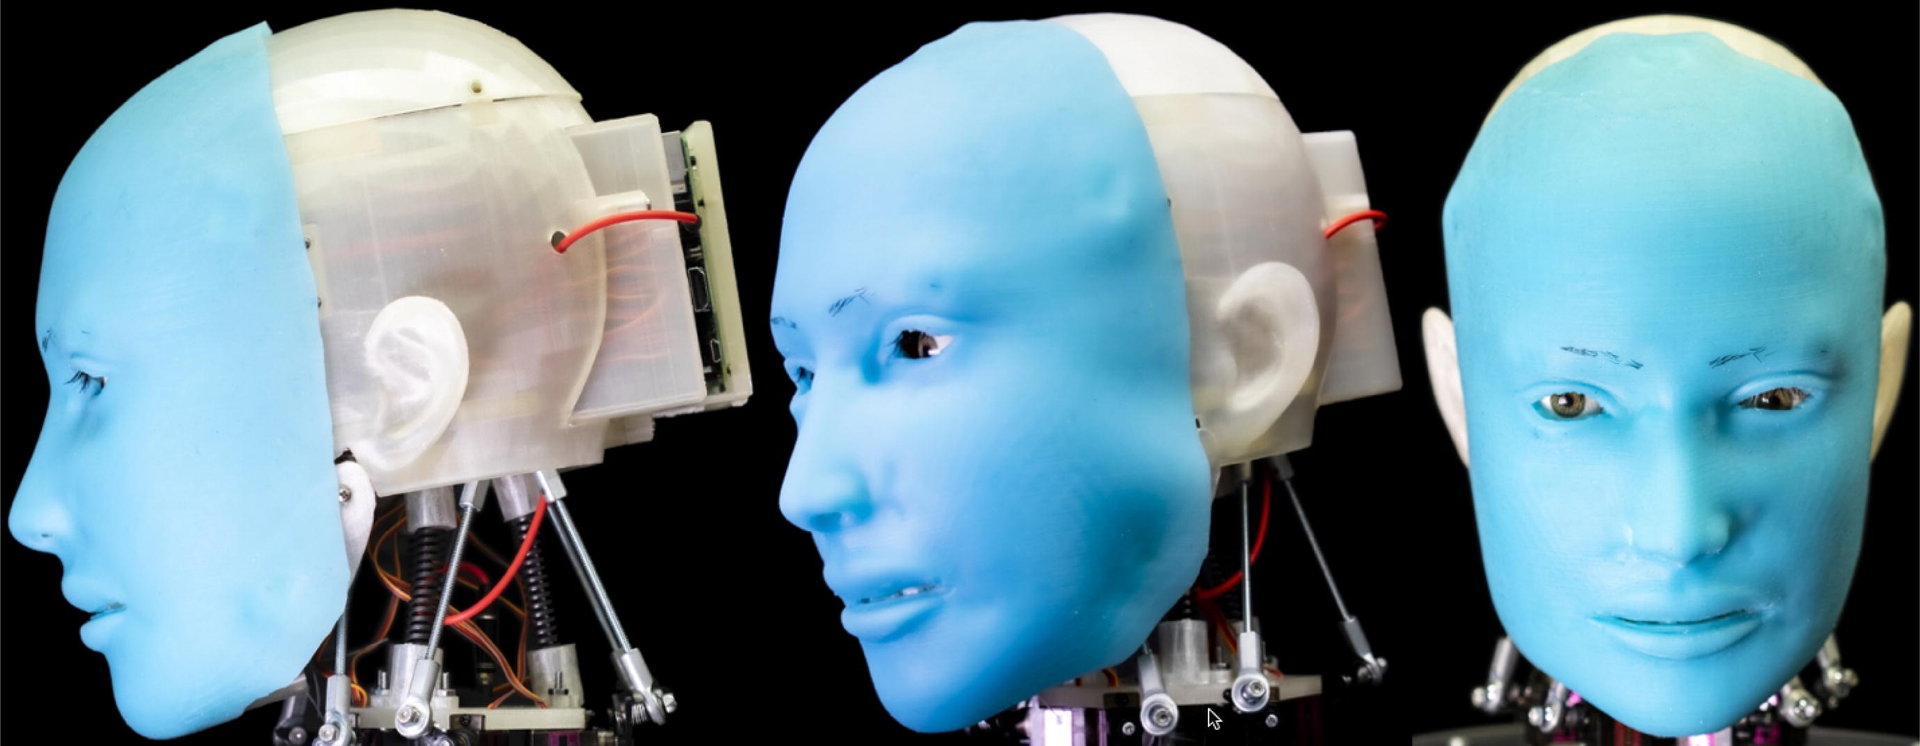 【ロボット技術】10万円以下で作れる表情豊かなヒューマノイド「Eva」　ラズパイで動くオープンソースロボット【画像微グロ注意】